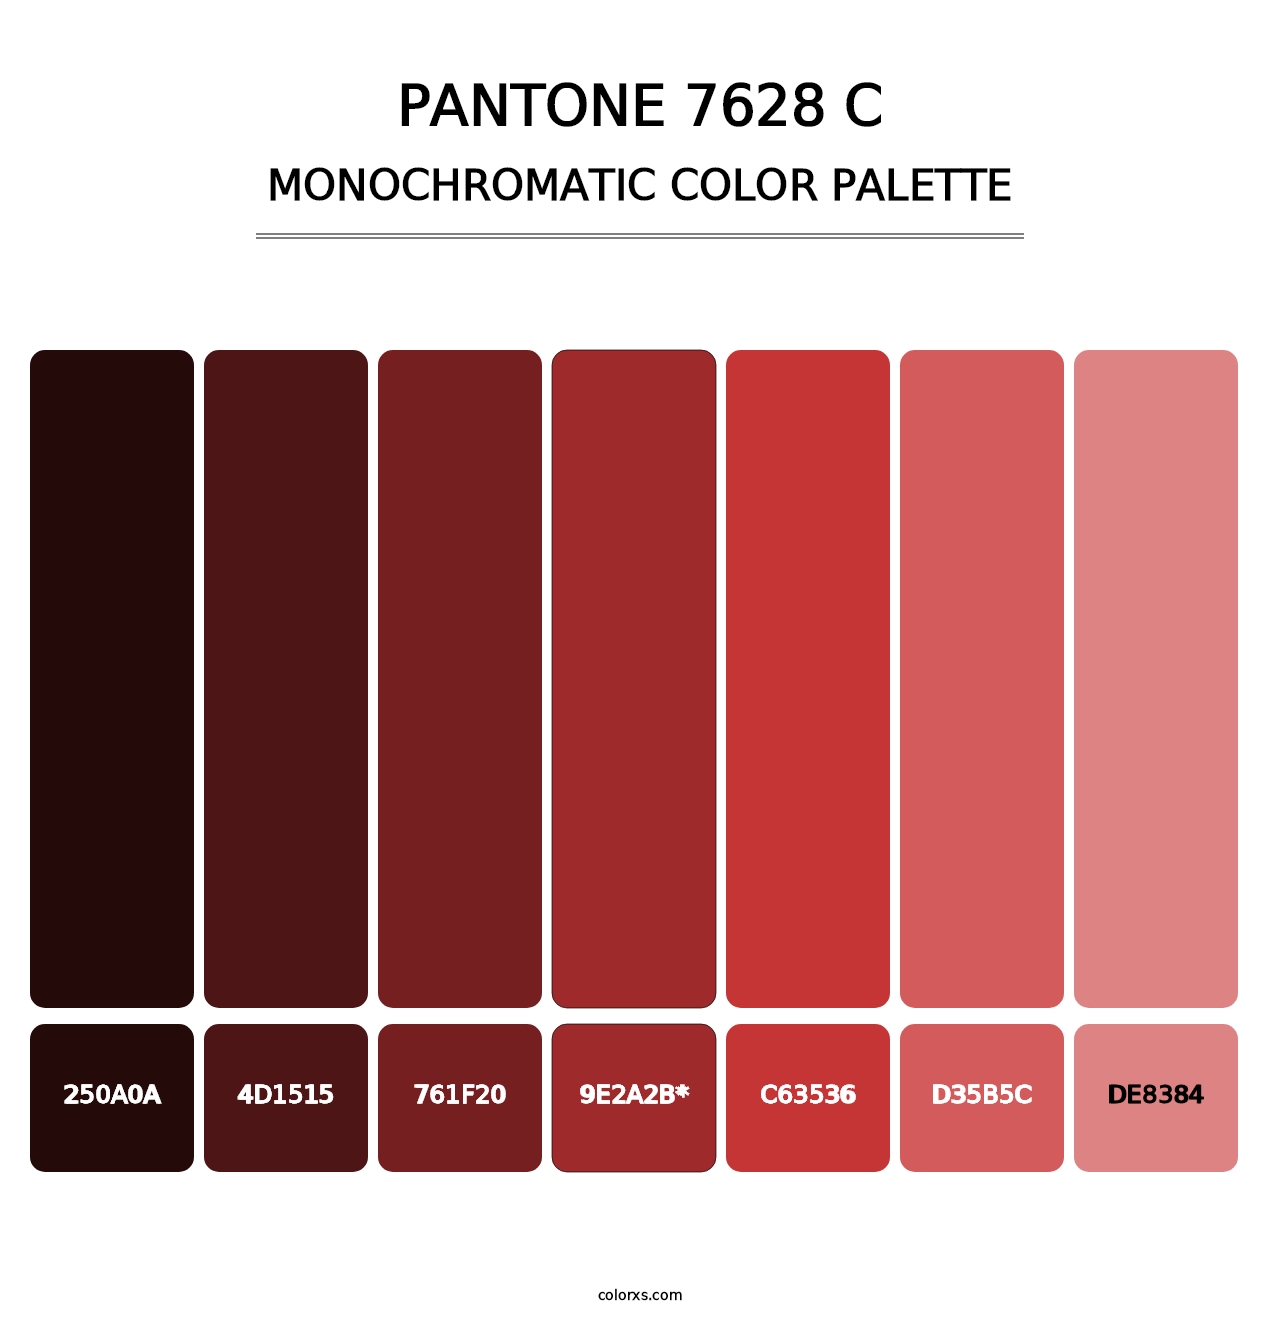 PANTONE 7628 C - Monochromatic Color Palette